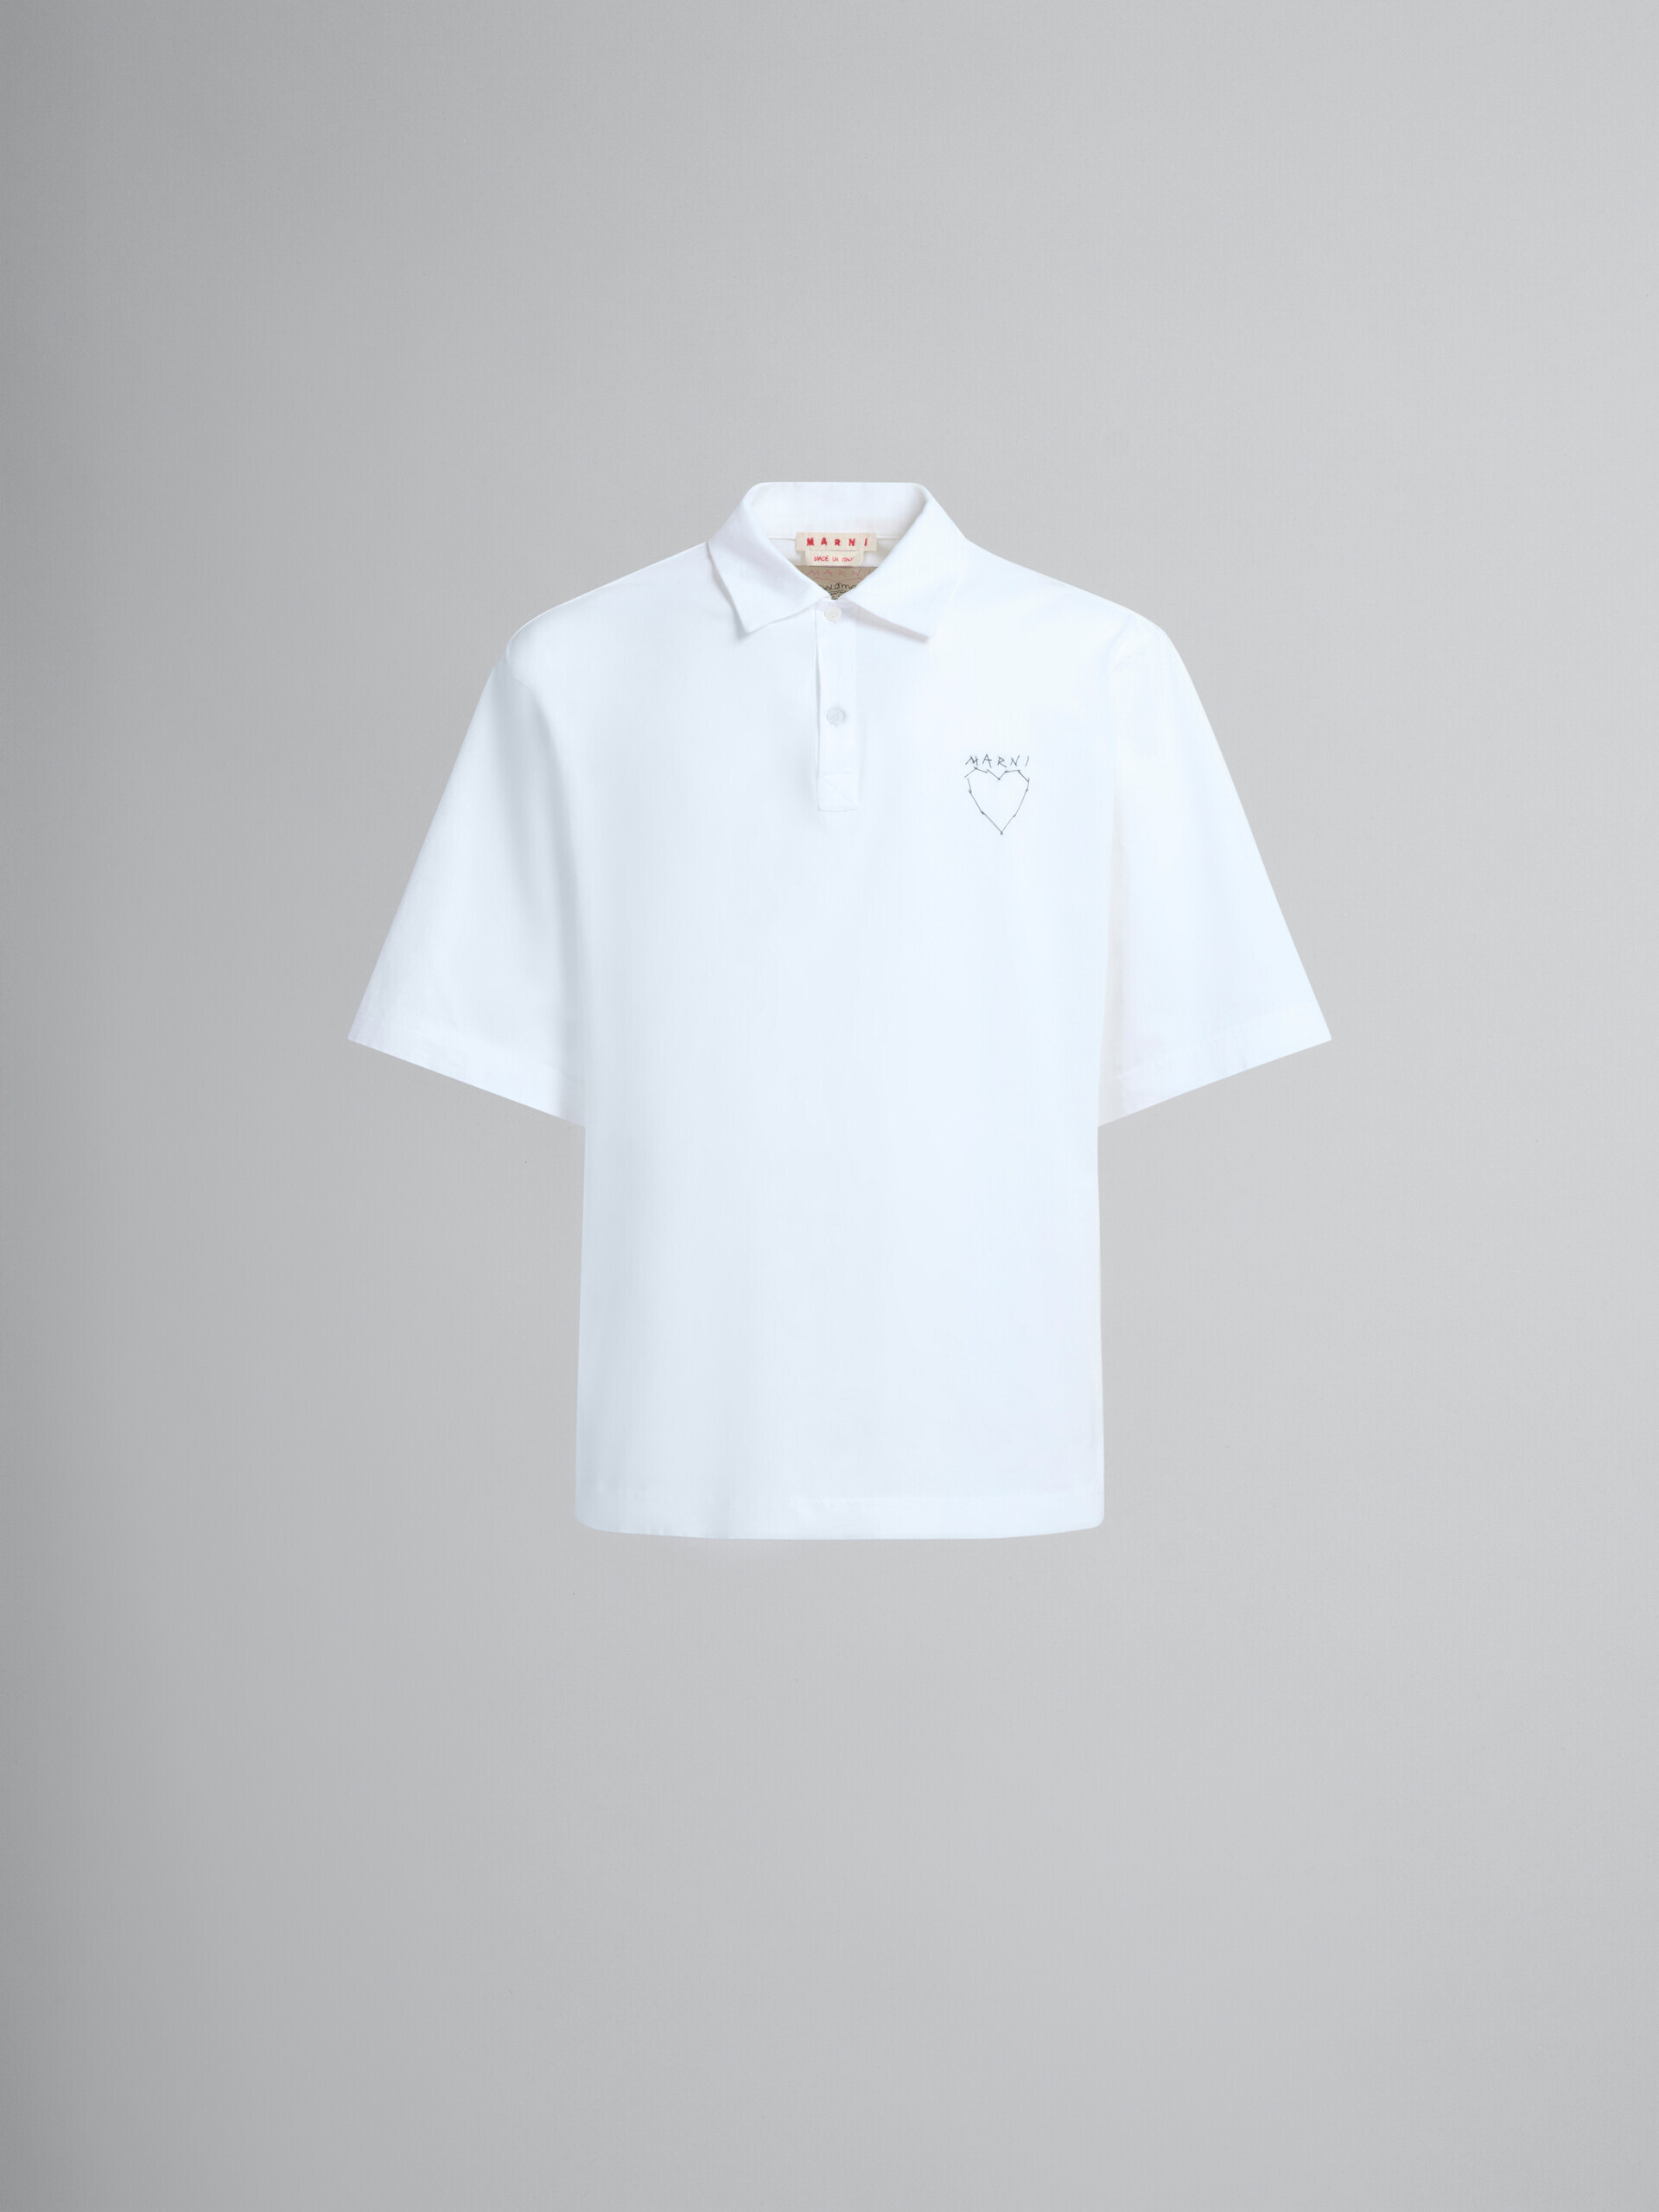 Polo in cotone biologico bianco con stampa sul retro - Camicie - Image 2